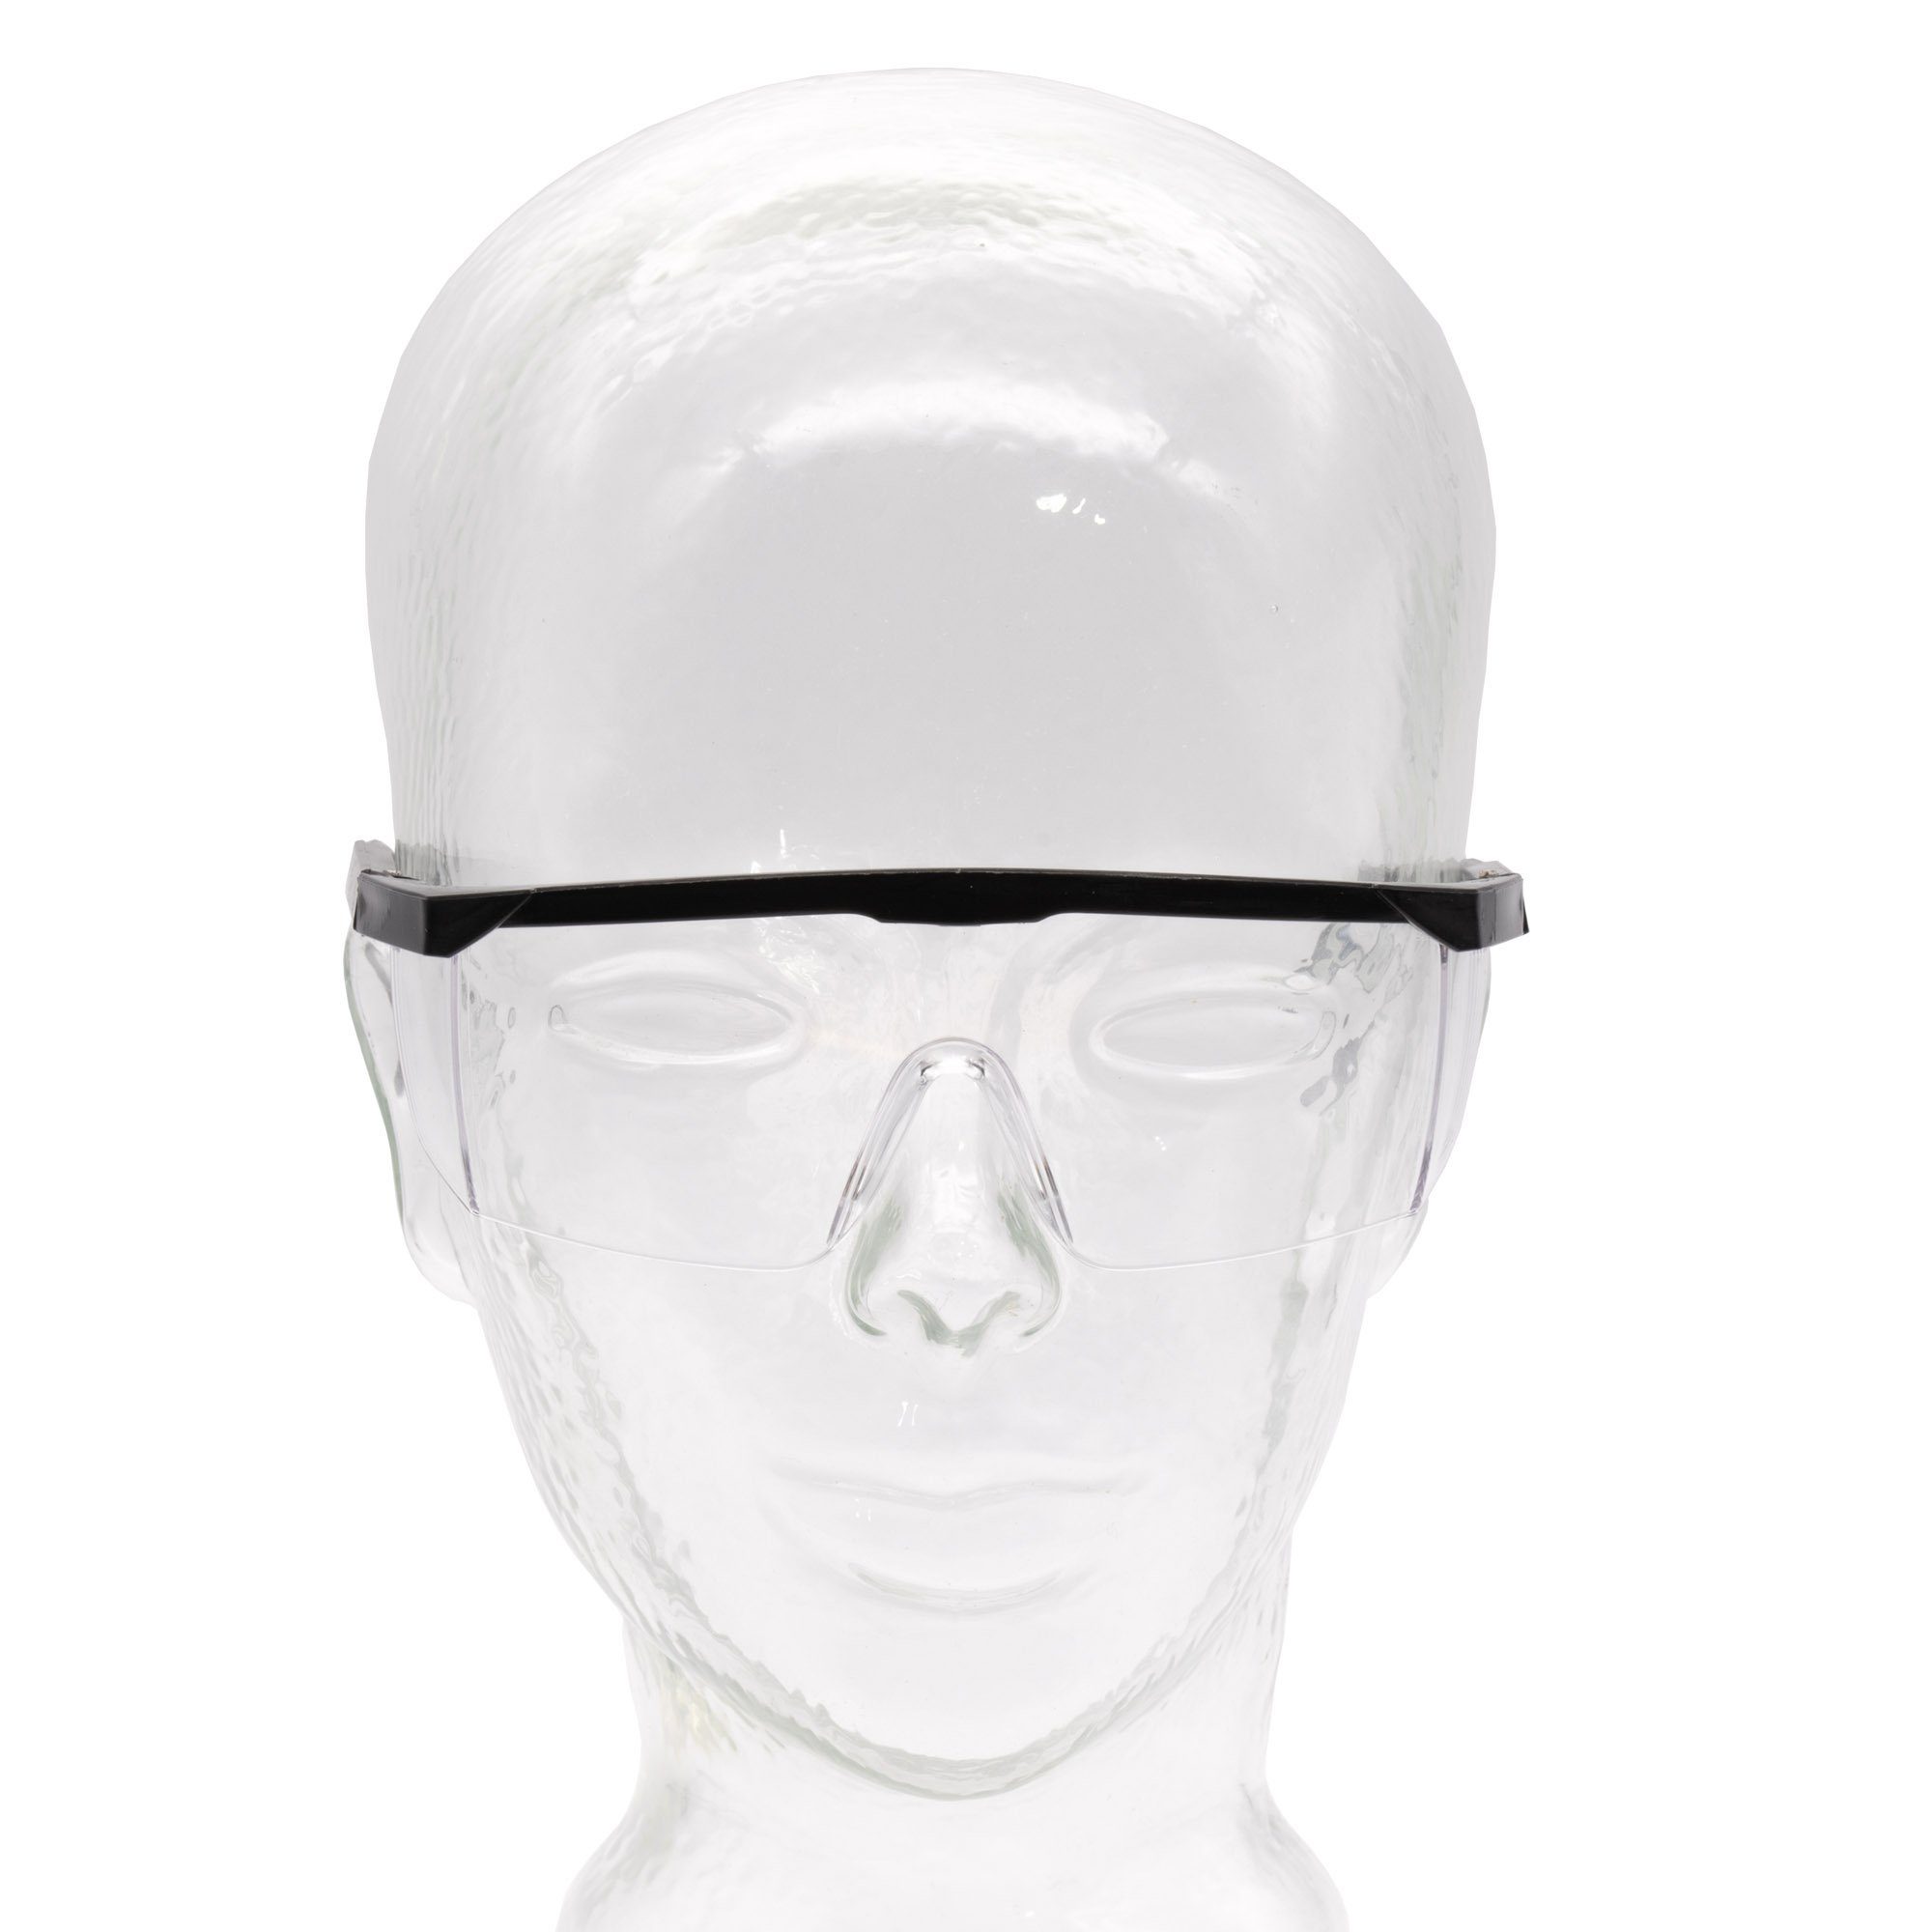 Arbeitsschutzbrille, Top, Augenschutz Arbeitsschutzbrille conkor Sicherheitsbrille Schutzbrille Arbeitsbrille